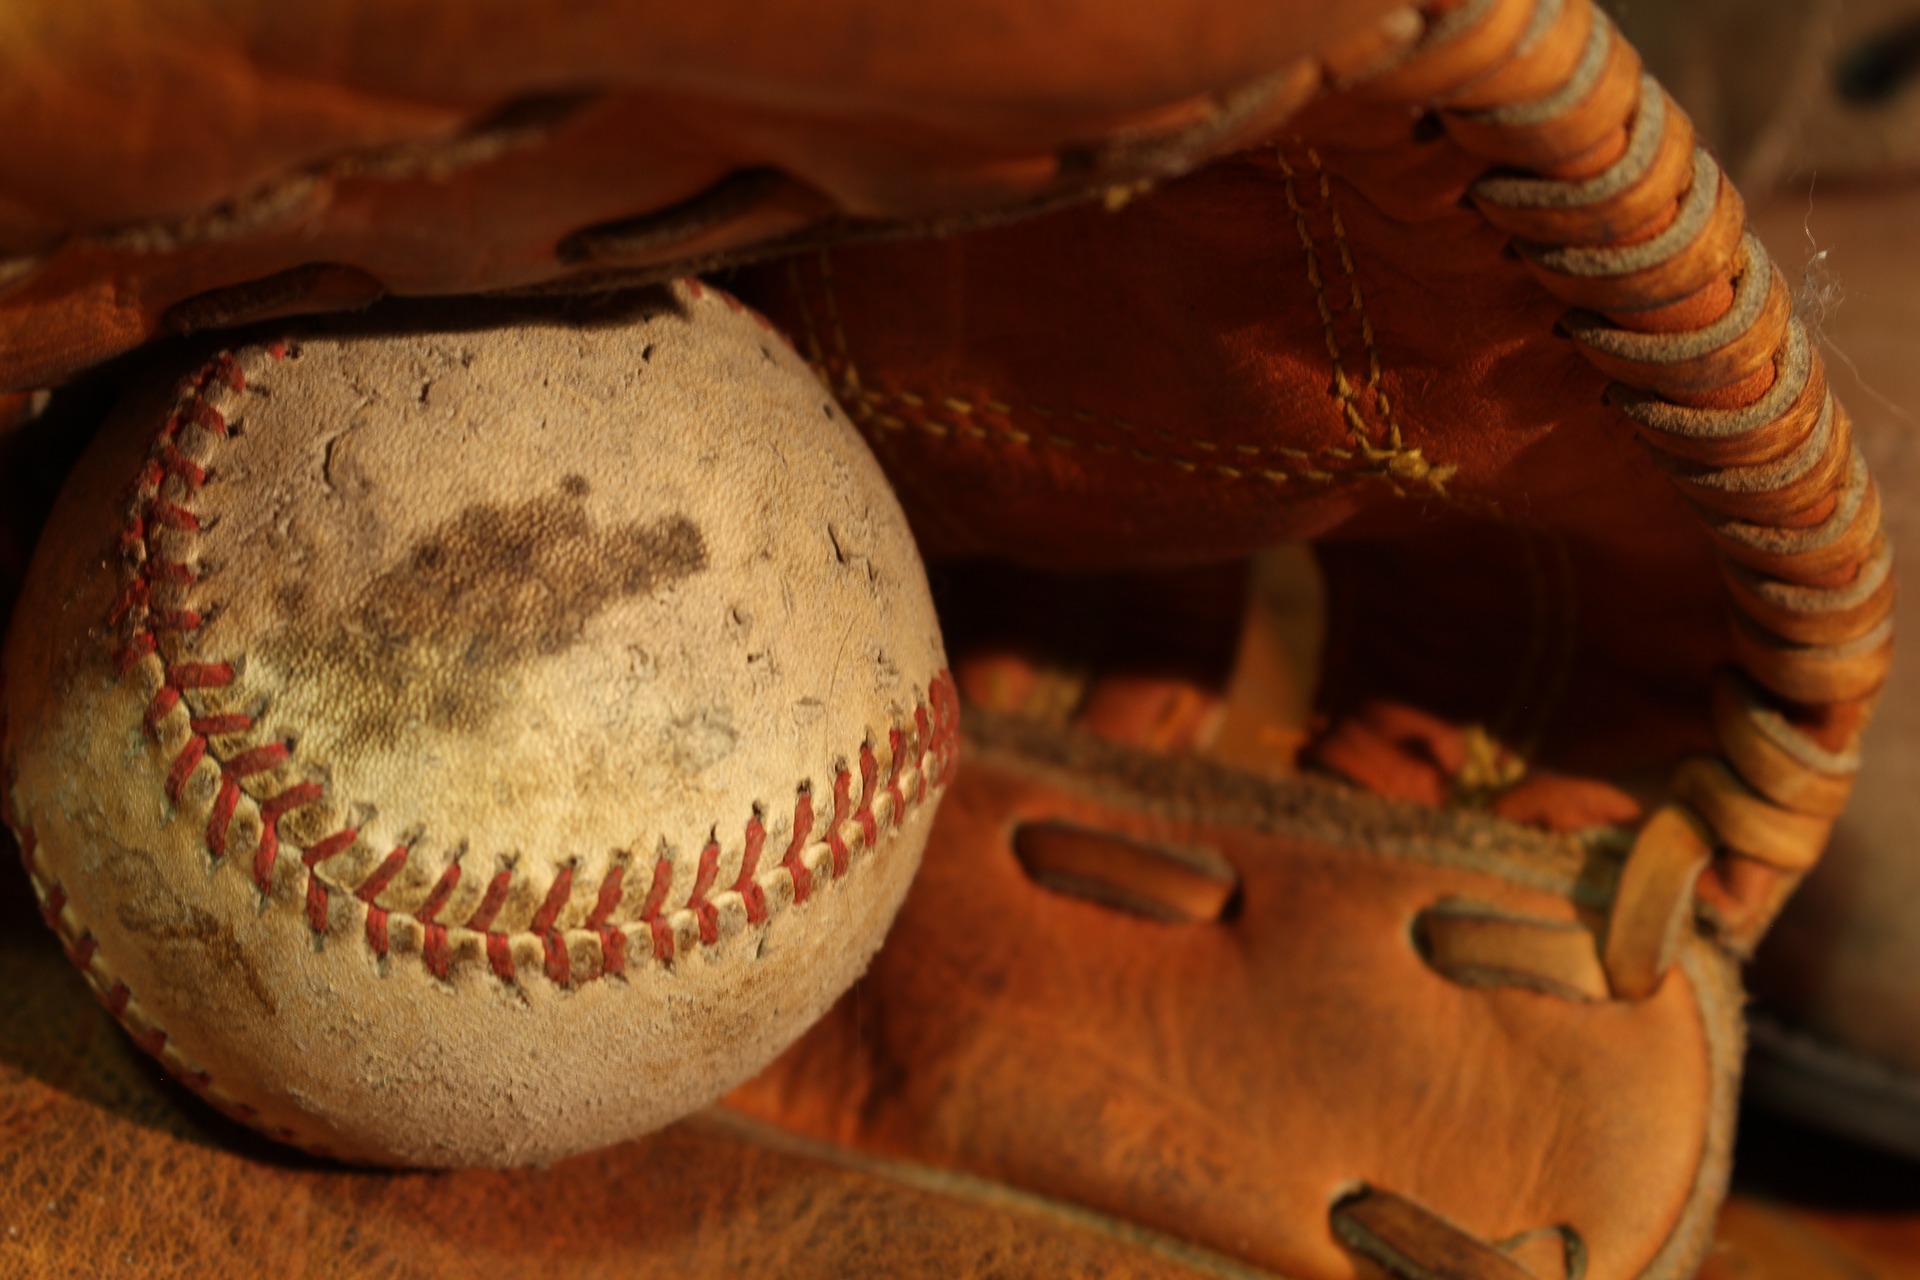 A baseball in a glove